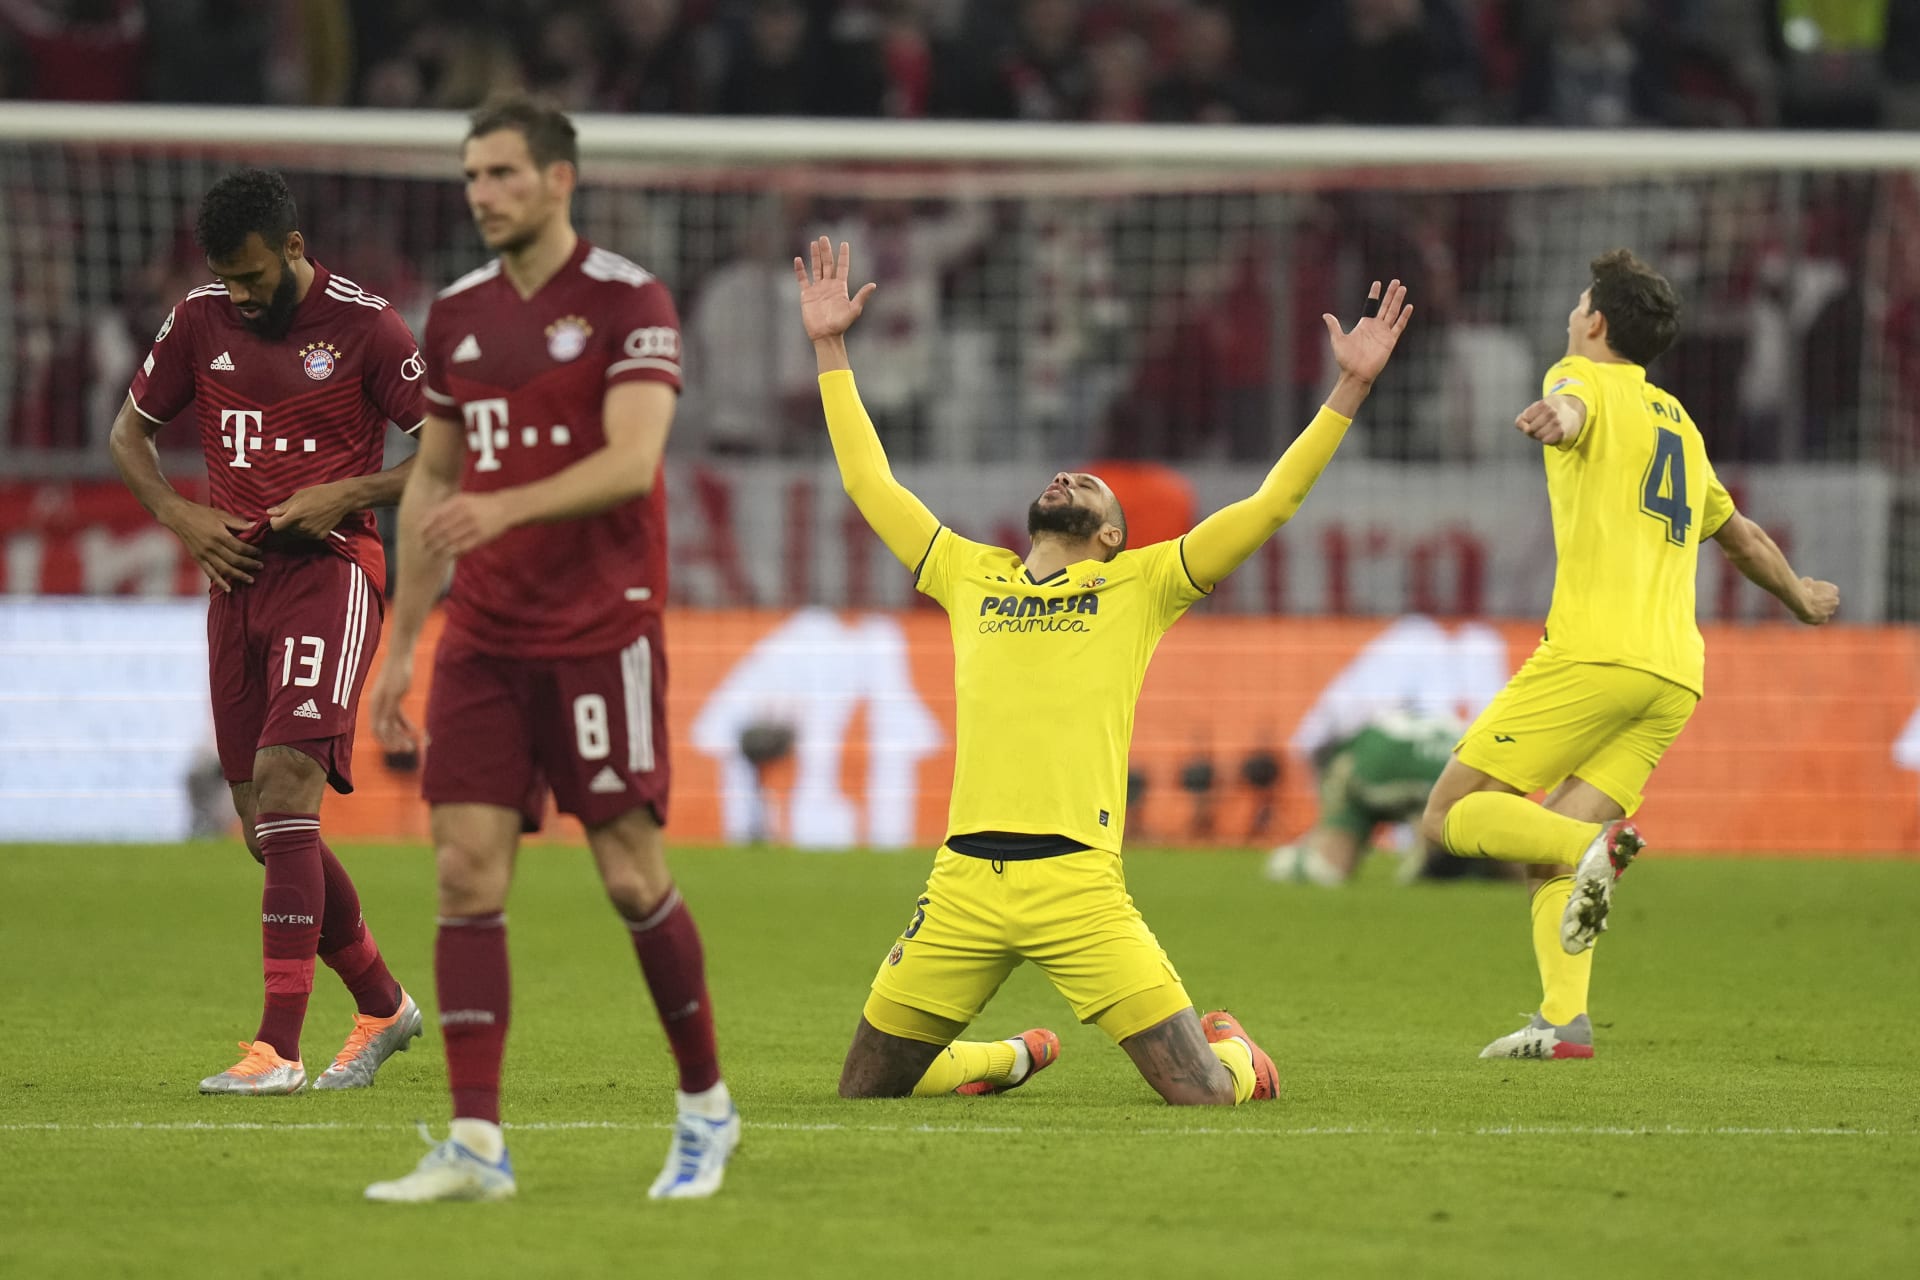 Šok v Lize mistrů. Villareal postoupil do semifinále přes Bayern Mnichov.